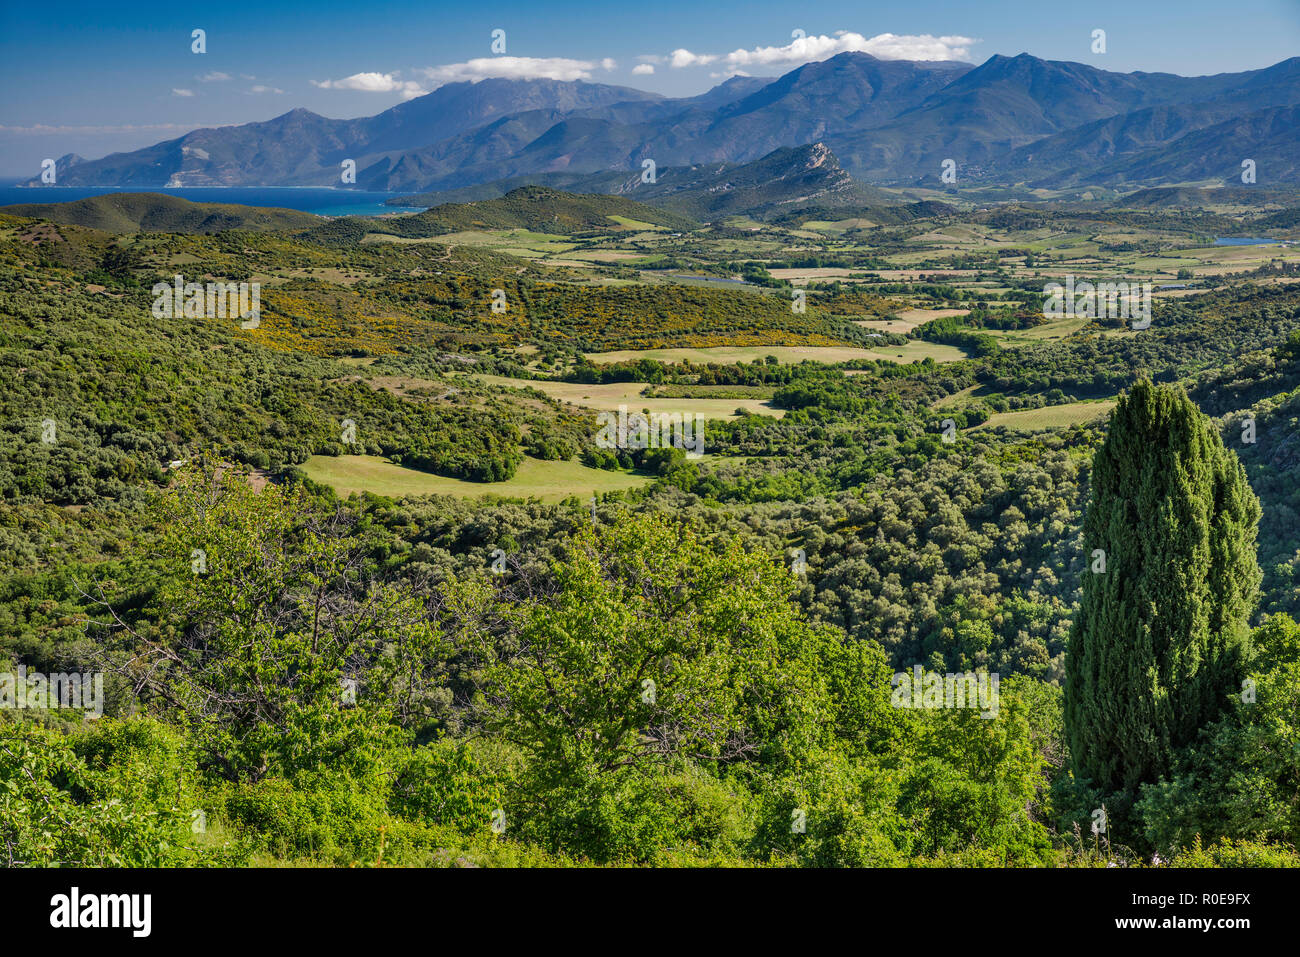 Vue du Nebbio (région de la vallée de la rivière Aliso), Serra di Pigno massif à distance, près du village de Sorio, département de Haute-Corse, Corse, France Banque D'Images